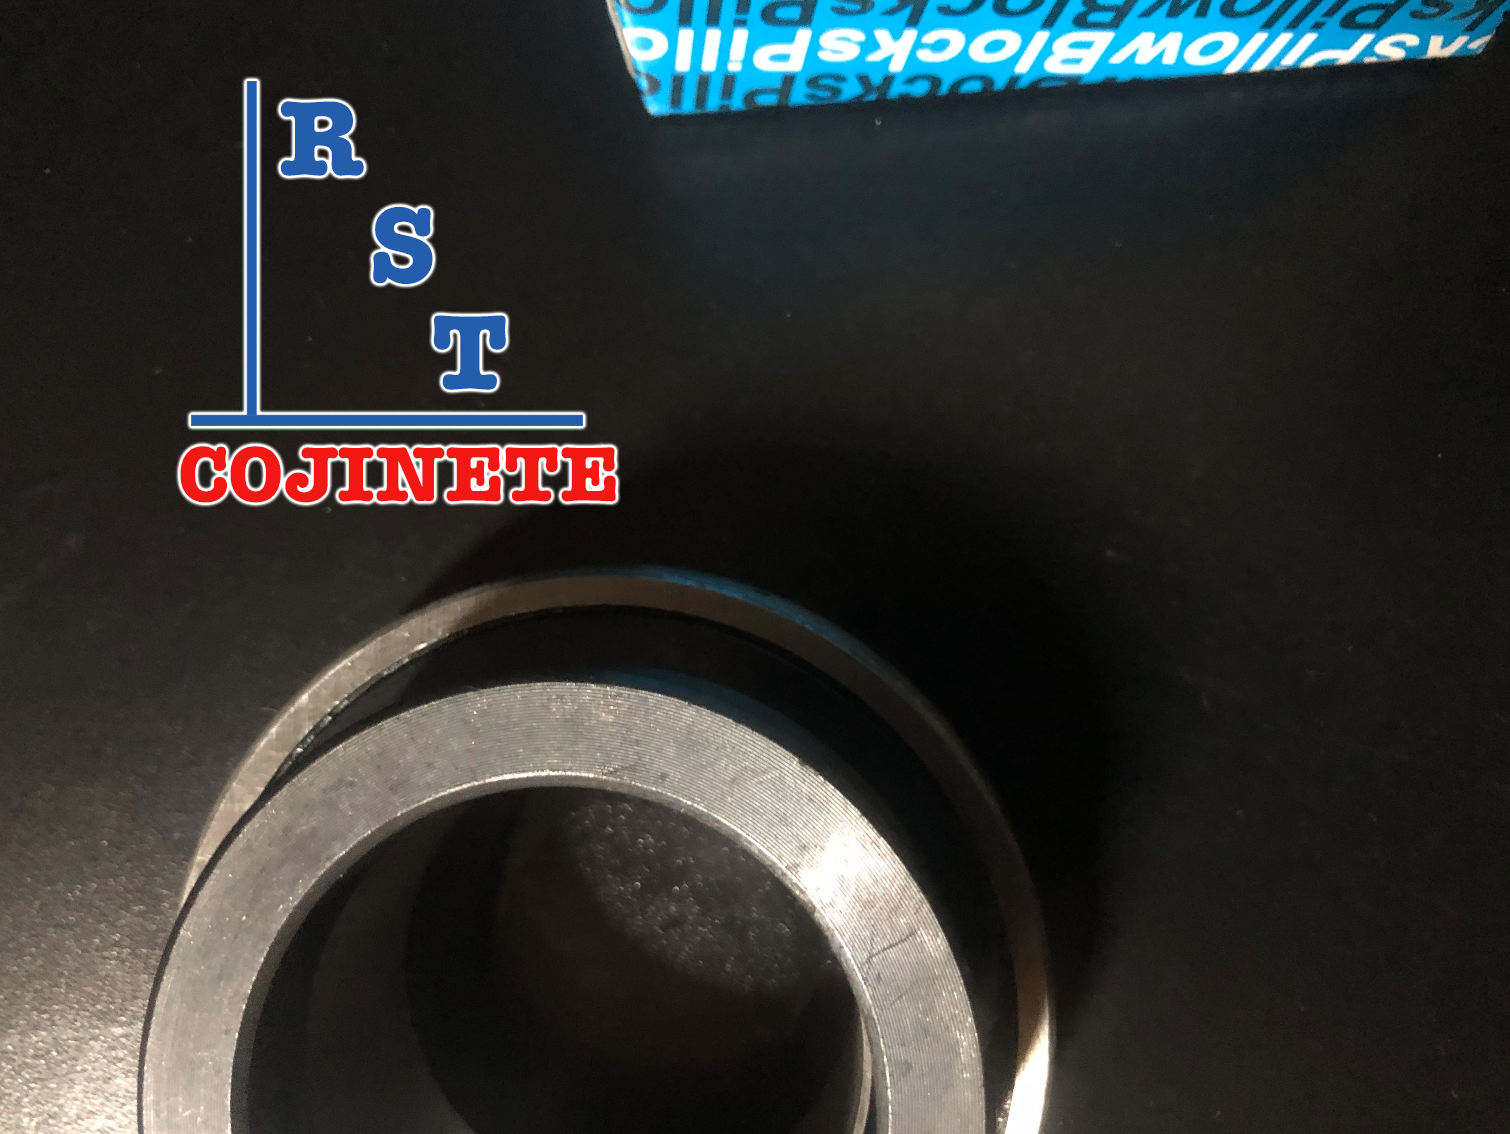 Rodamiento SA206 | Cojinete para chumaceras con eje de 30mm con respaldo plano y anillo excéntrico